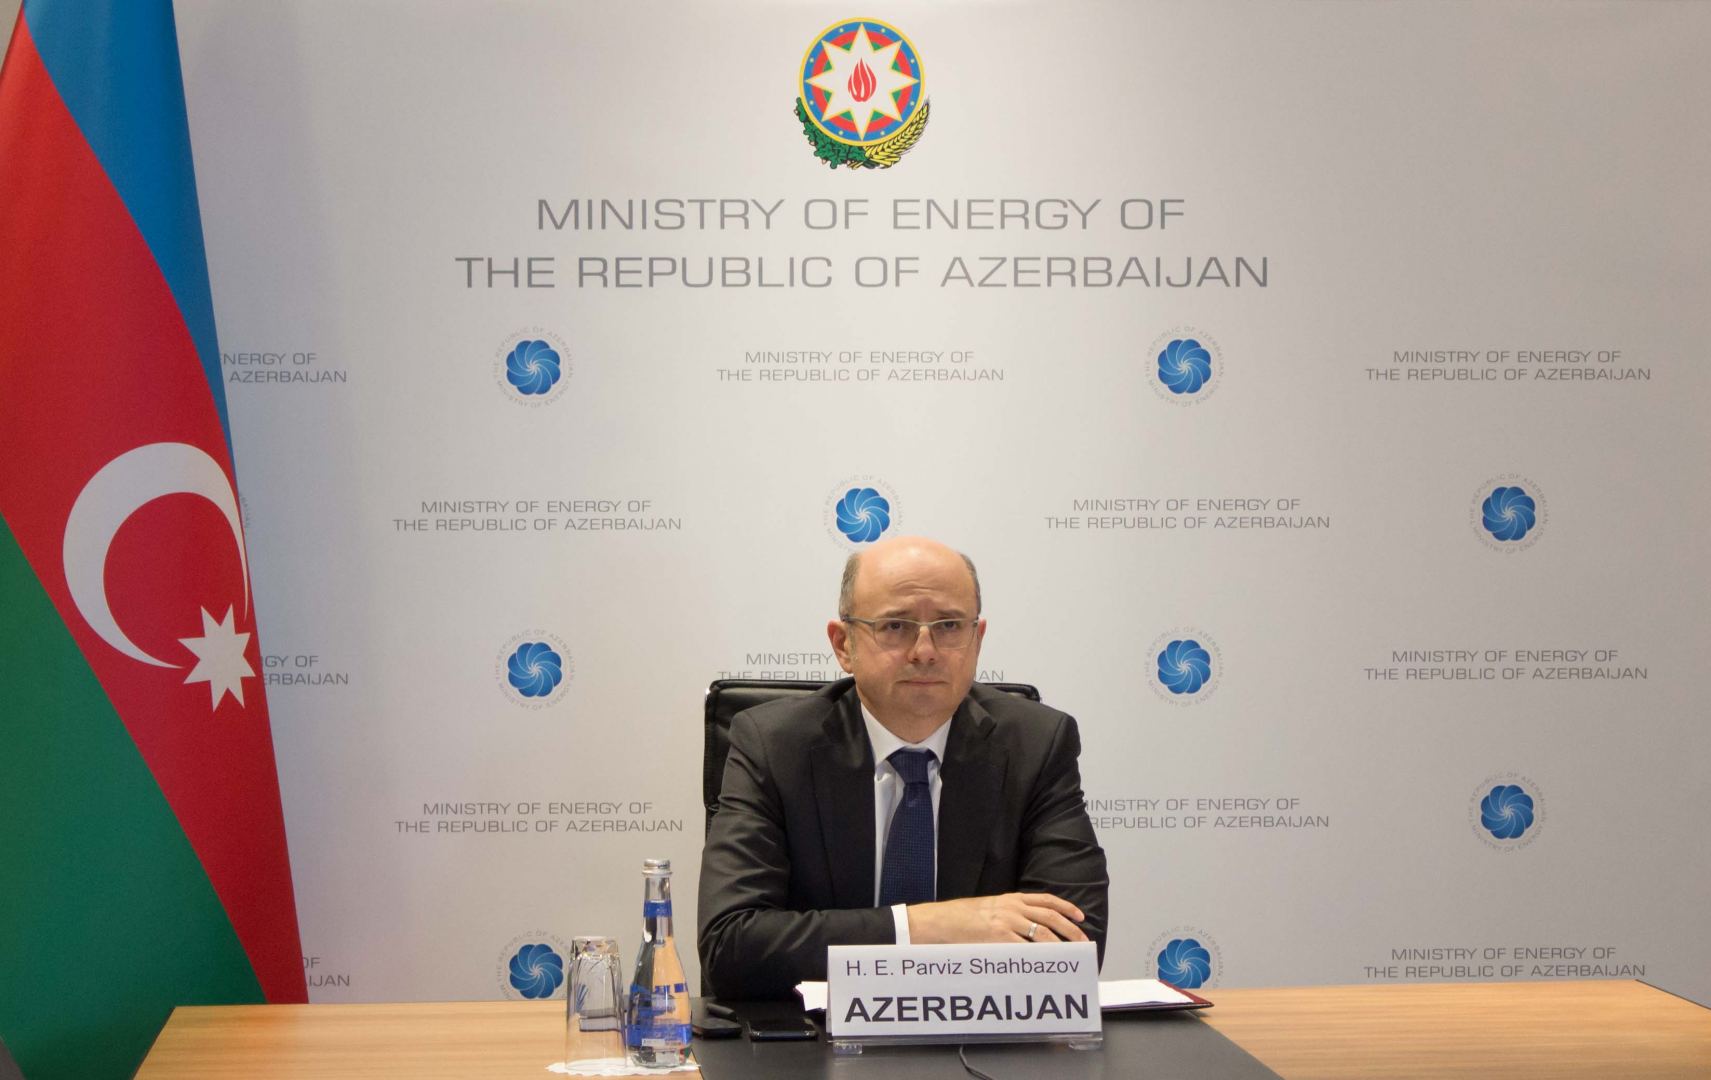 Переговоры по модернизации договора Энергетической Хартии начнутся в скором времени (ФОТО)